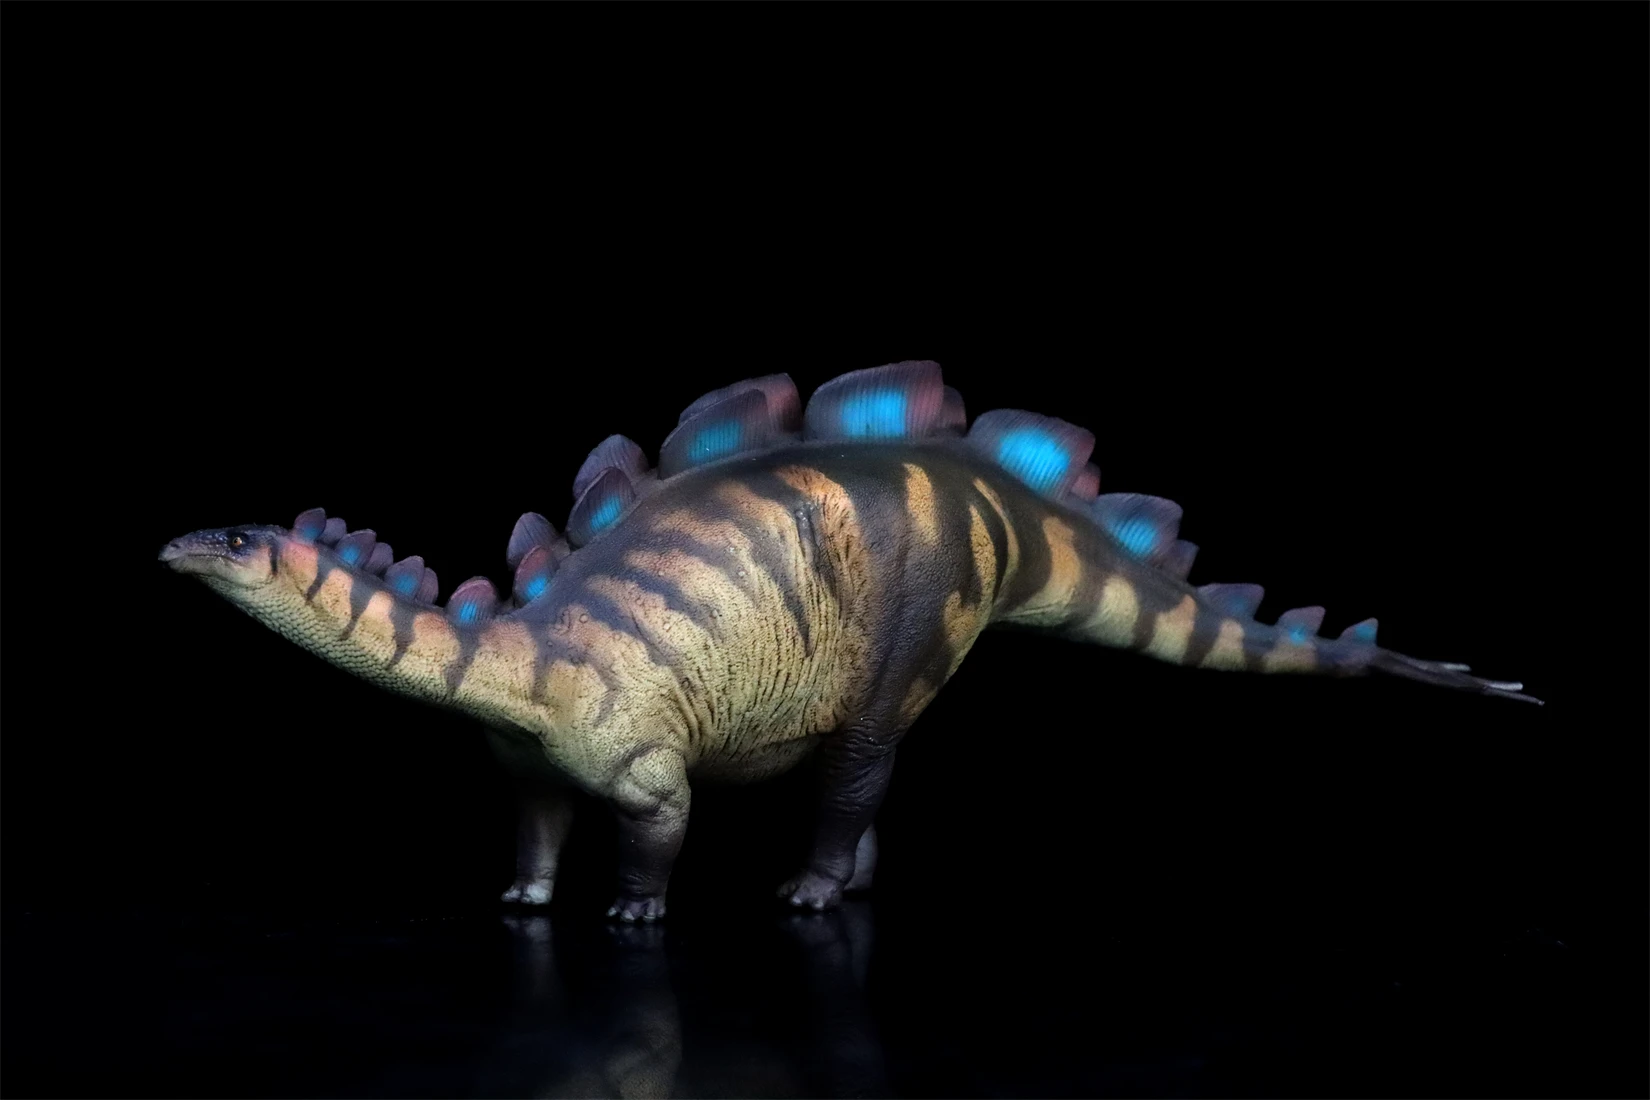 รุ่น pnso 82 wuerhosaurus Xilin ไดโนเสาร์สเตโกซอริเดการตกแต่งฉากสัตว์ยุคก่อนประวัติศาสตร์ของขวัญคอลเลกชันรูปปั้นทางวิทยาศาสตร์